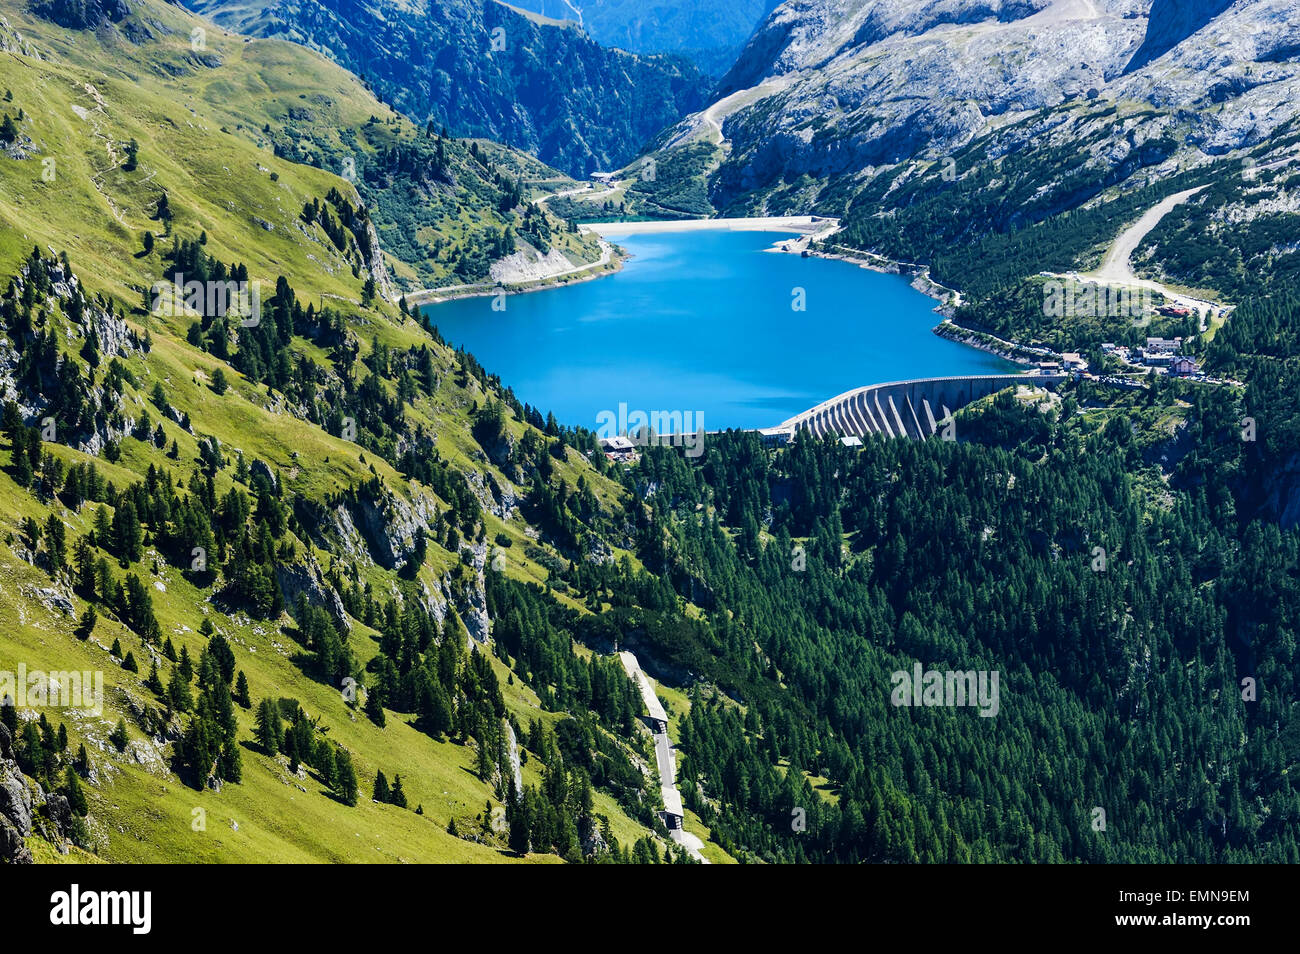 L'énergie renouvelable, barrage et lac de montagne - Italie Banque D'Images